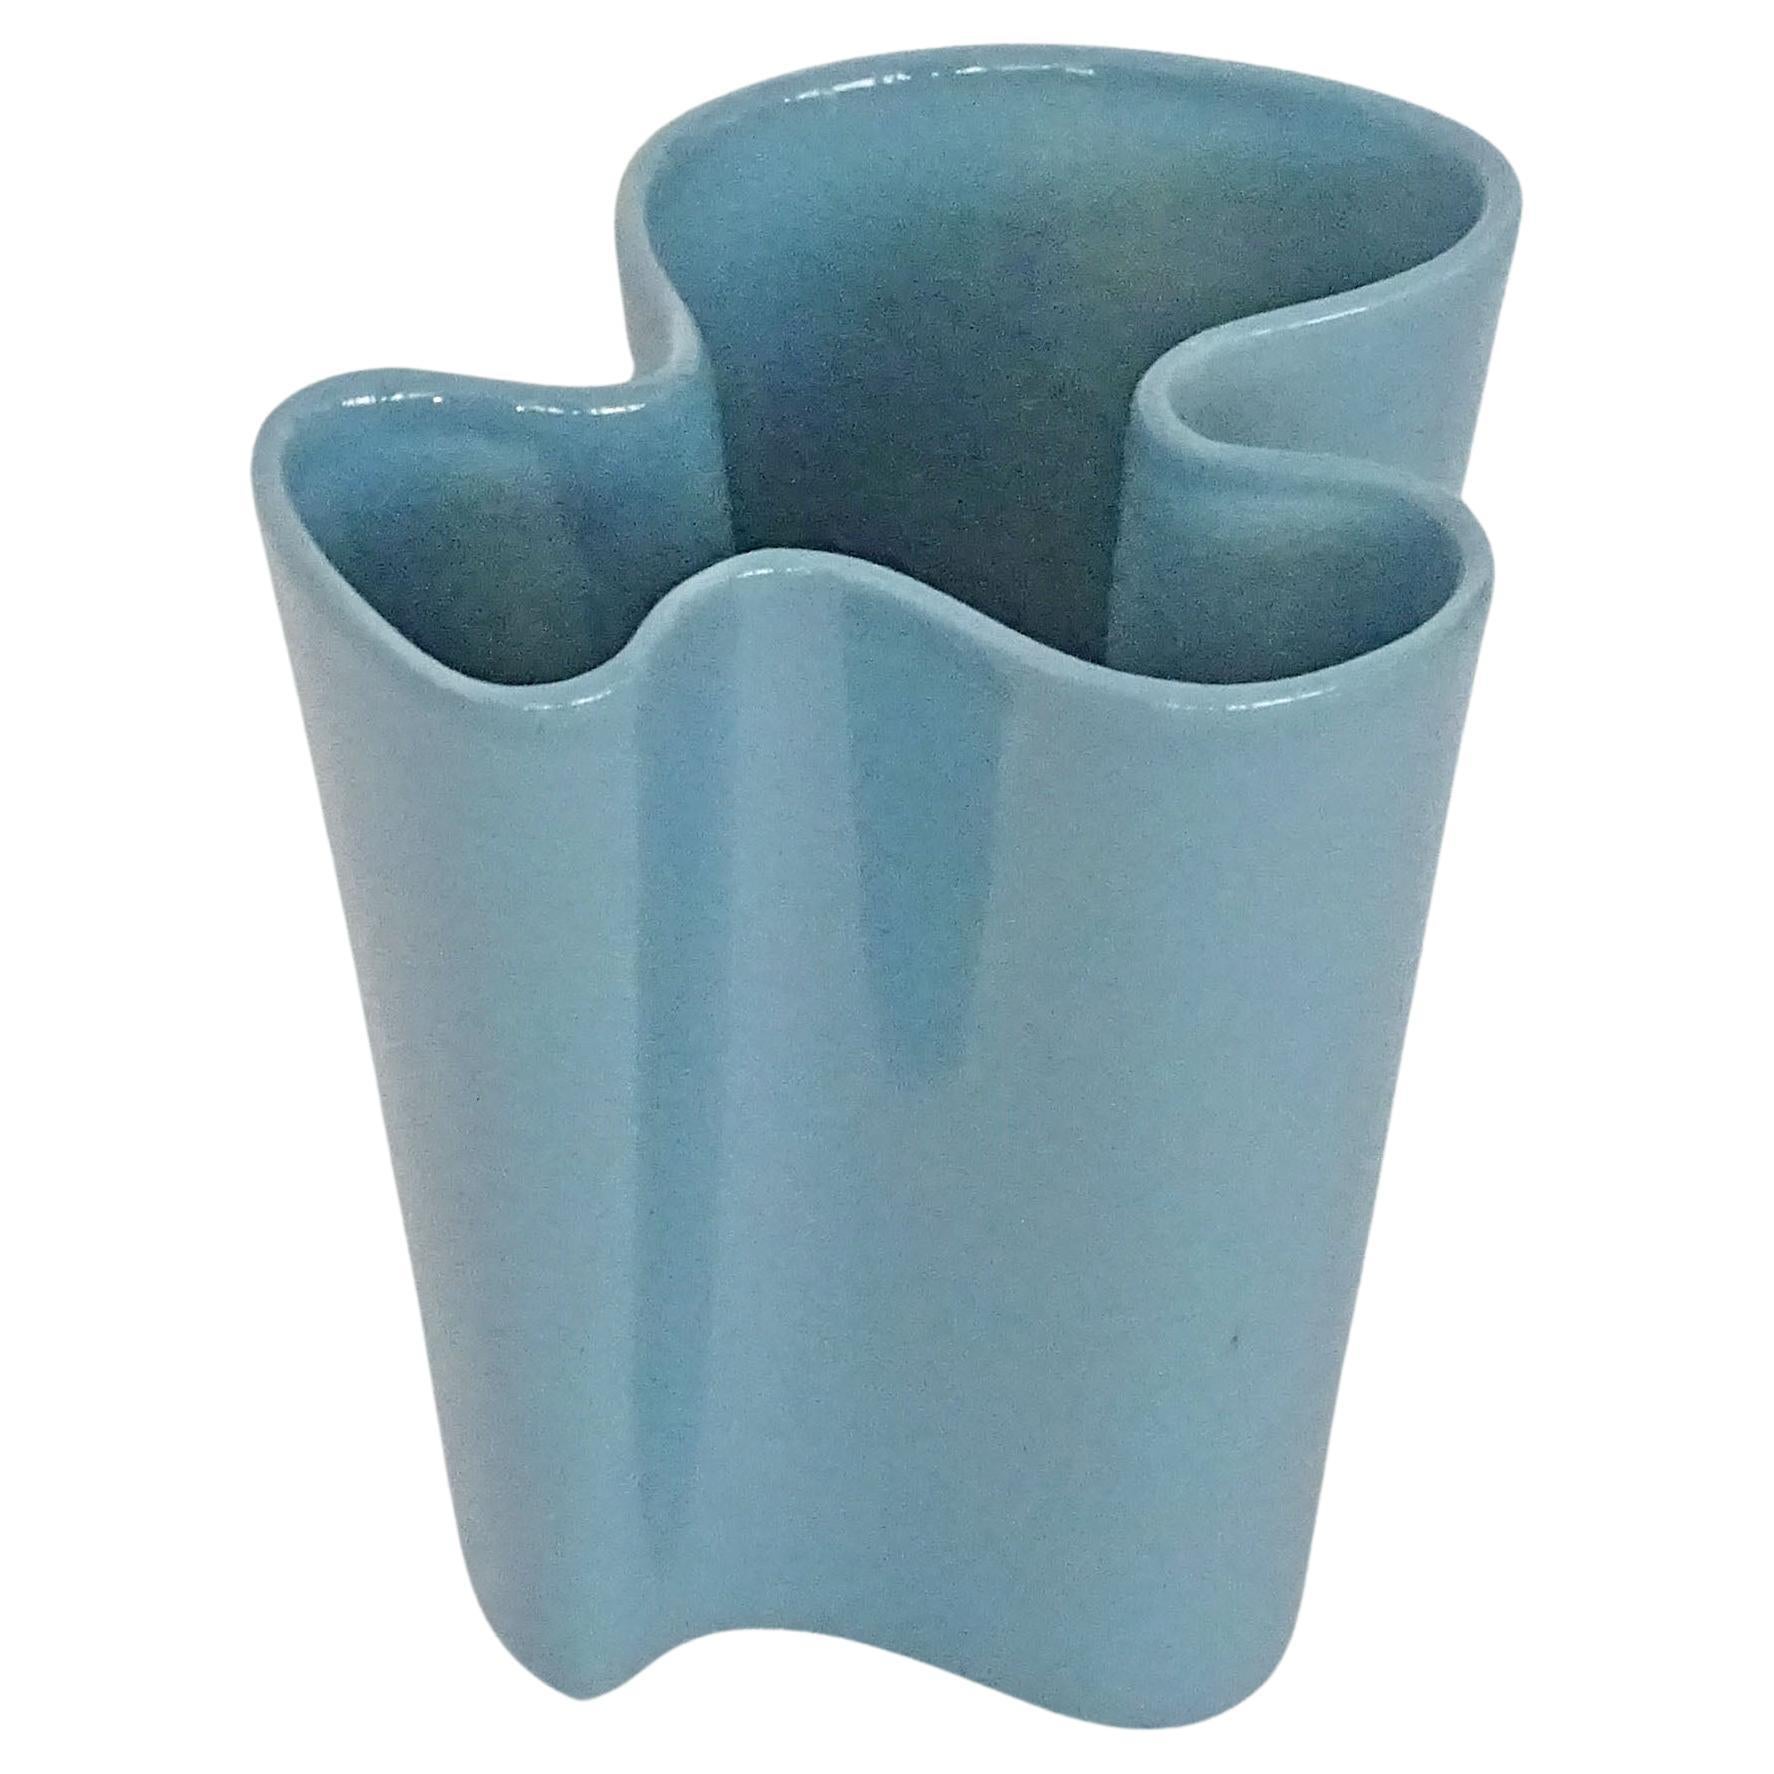 Vase biomorphe italien des années 1950 en céramique bleu pétrole